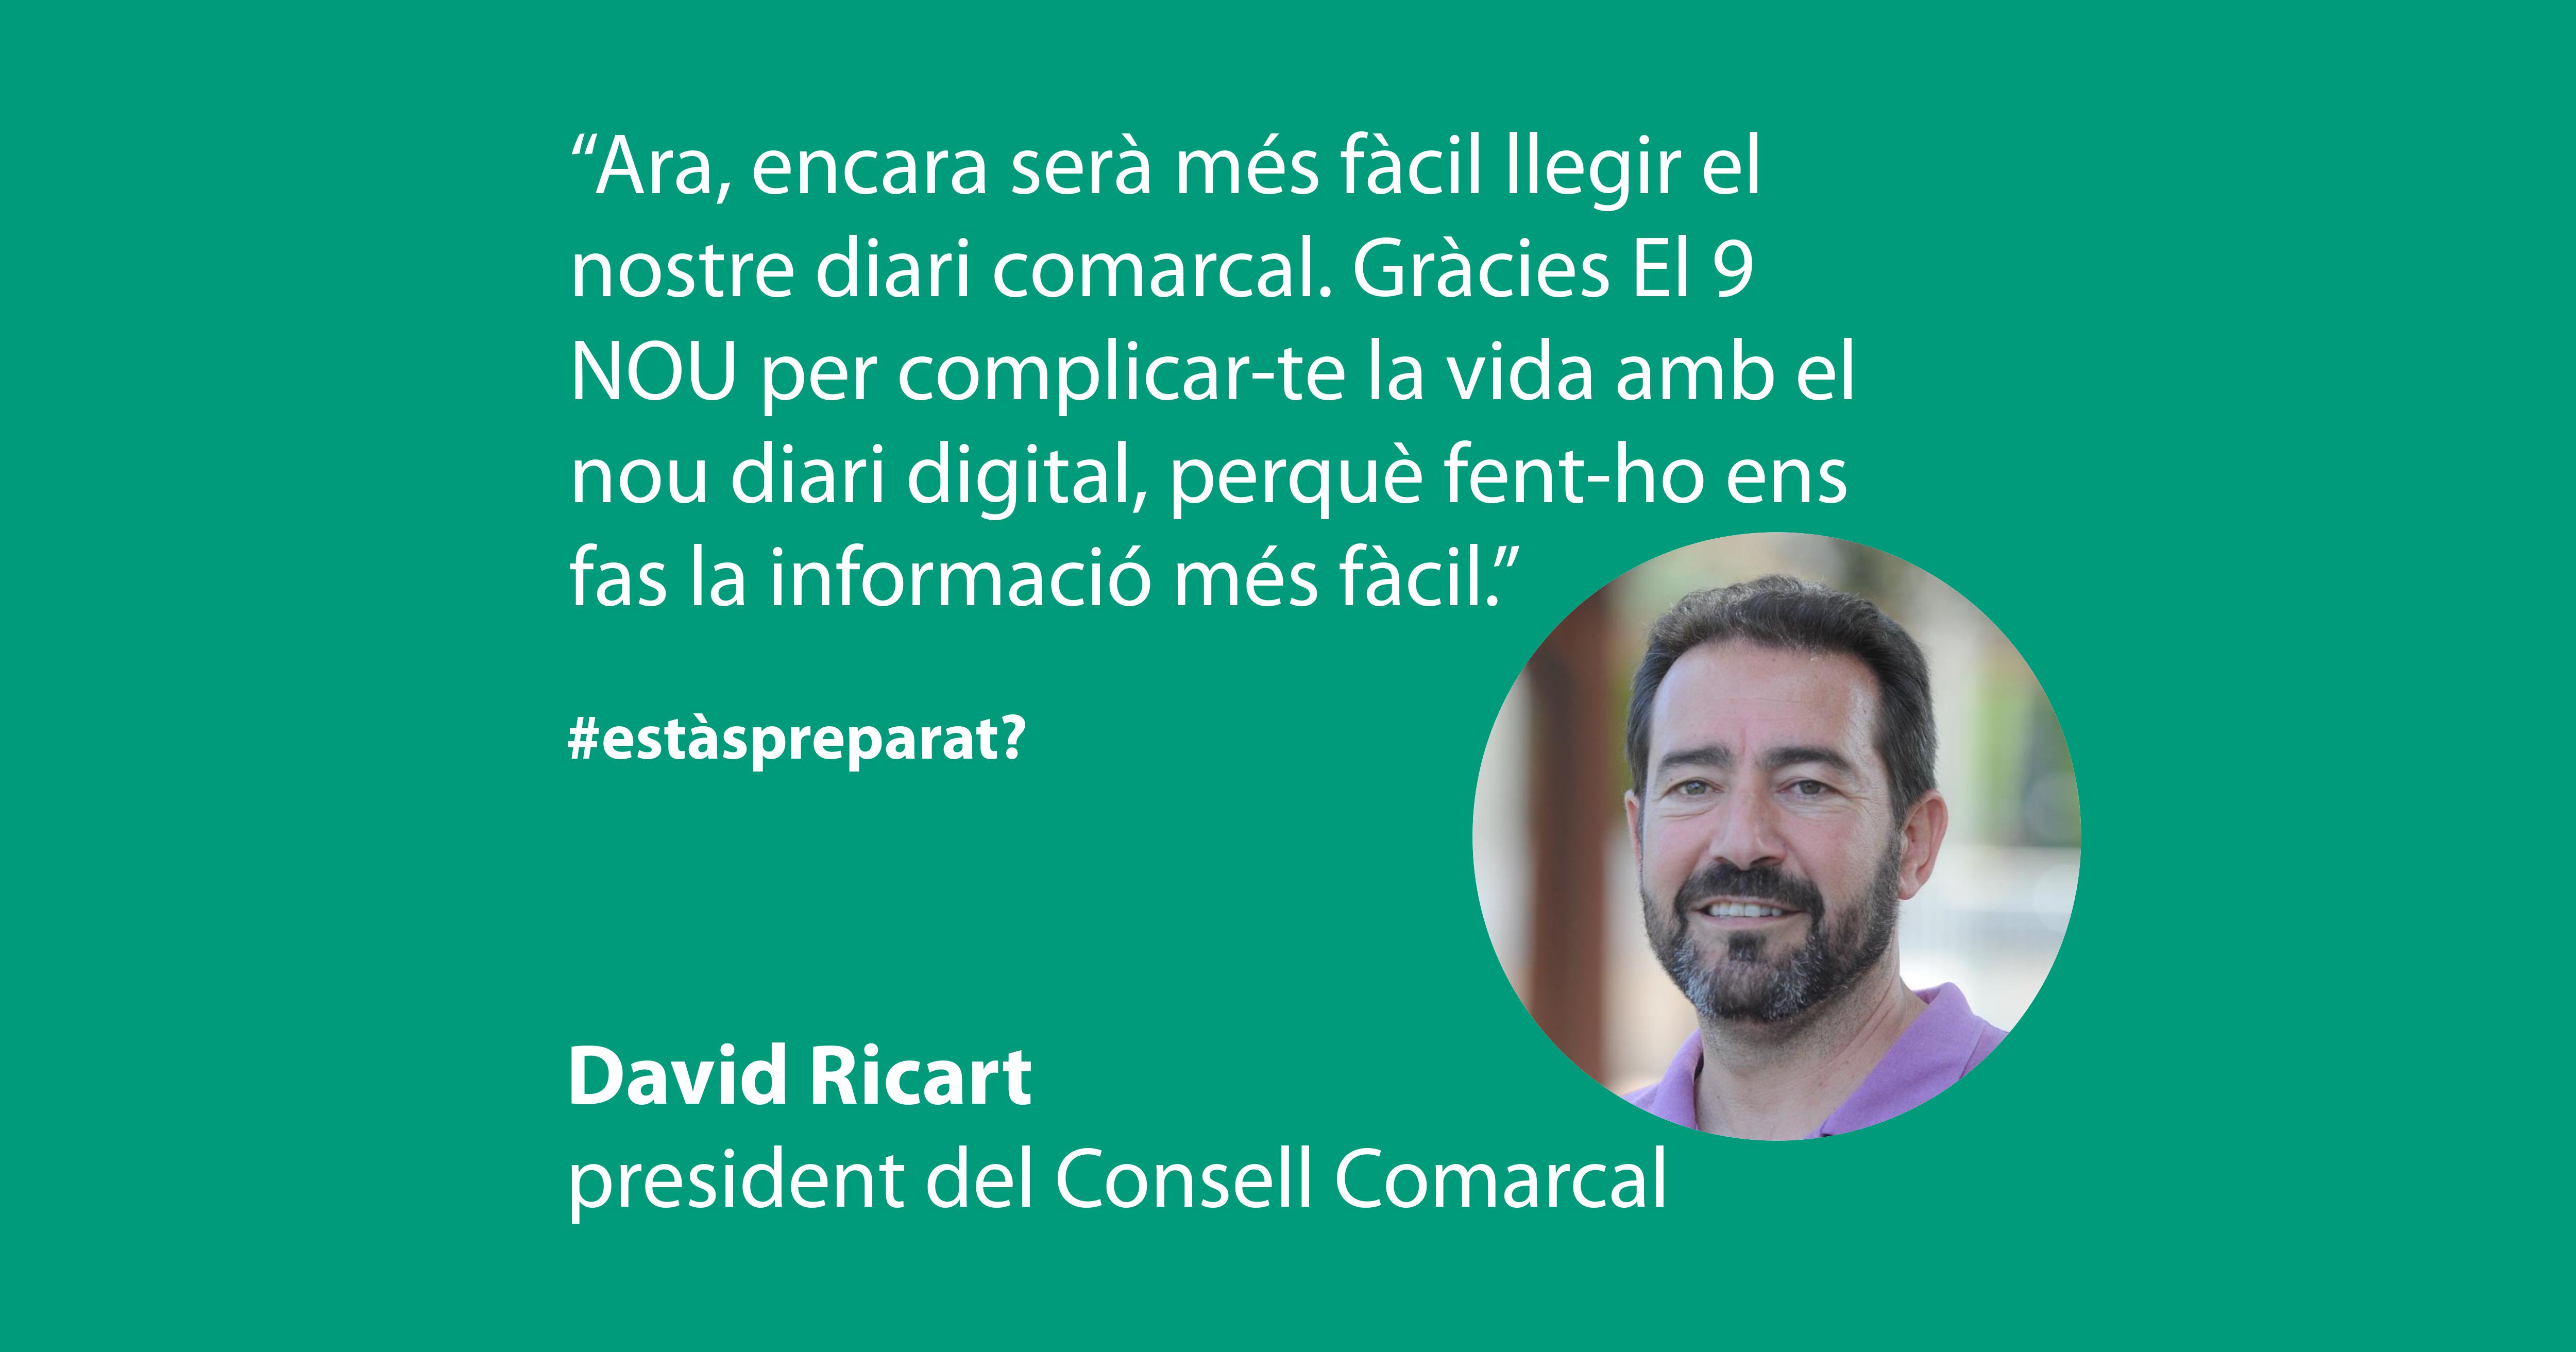 David Ricart